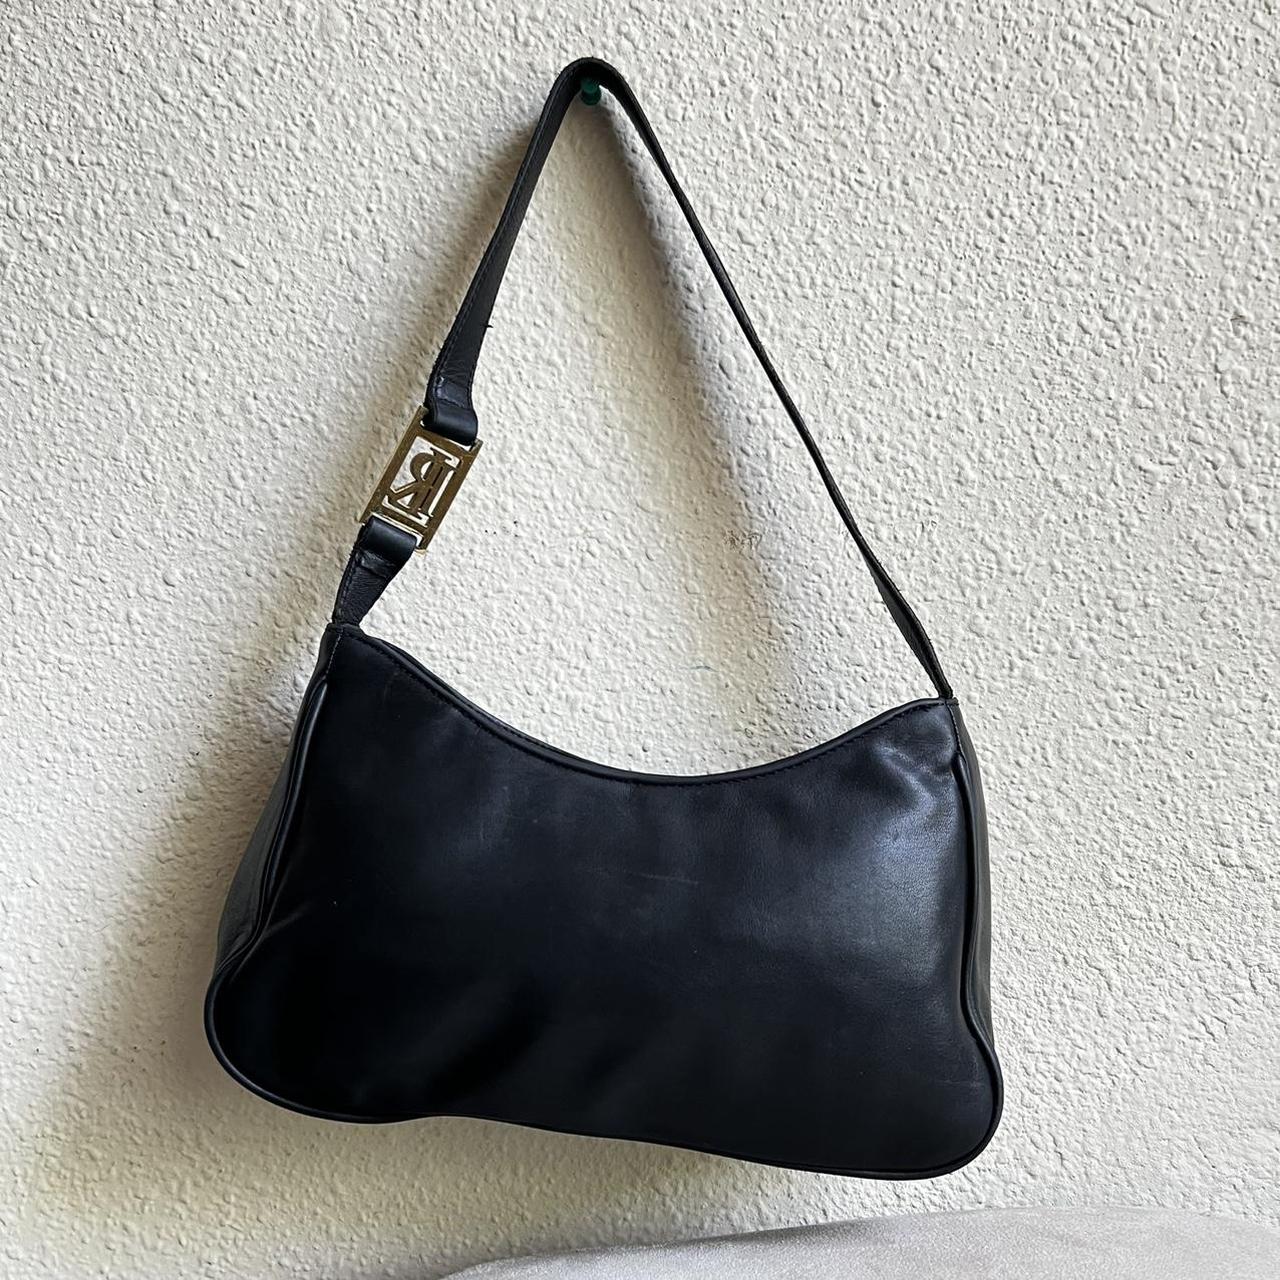 Vintage Lauren Ralph Lauren leather hand bag - Depop